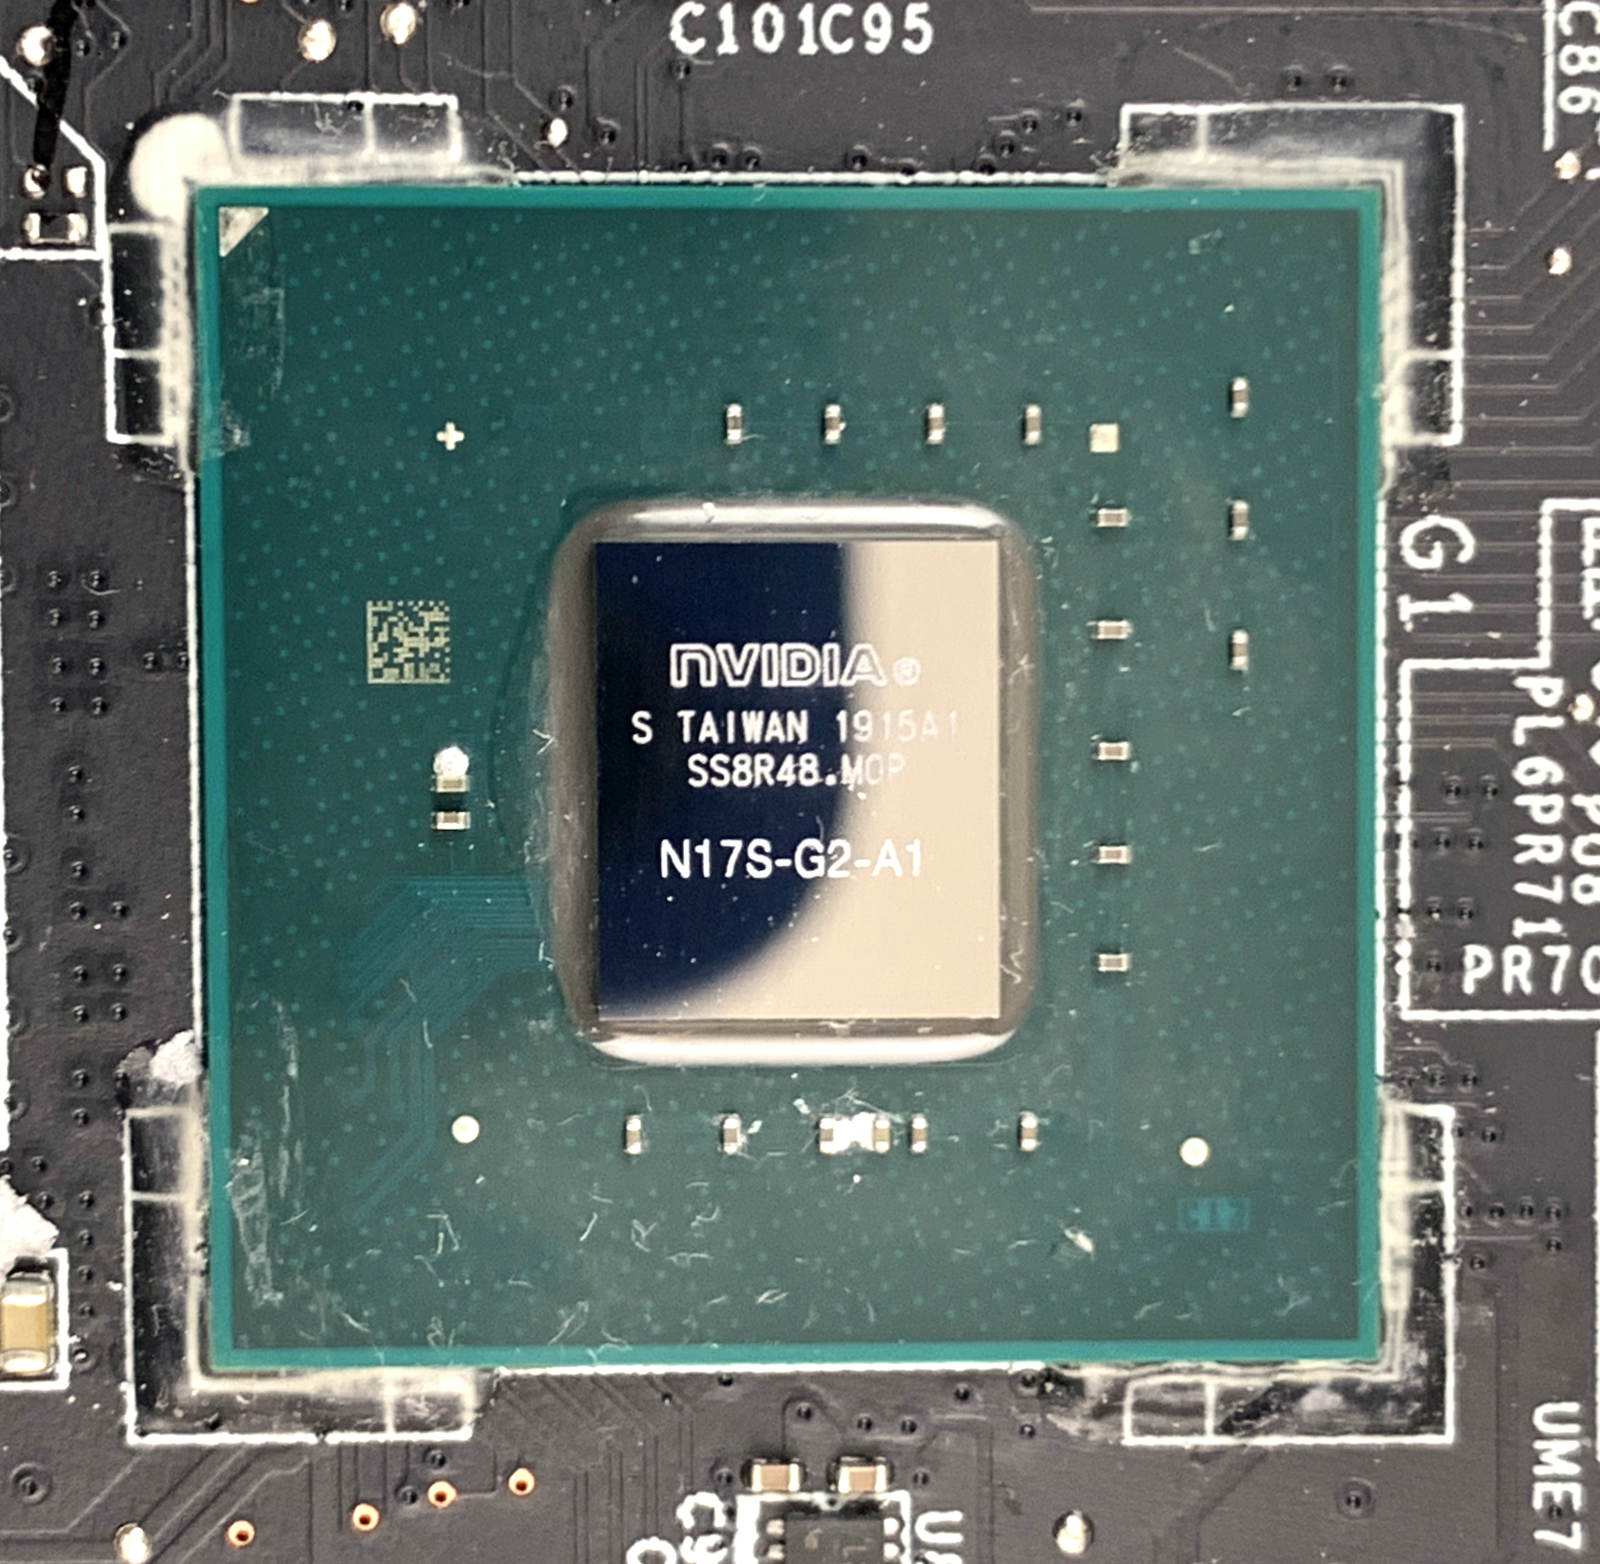 NVIDIA GeForce Card - NotebookCheck.net Tech